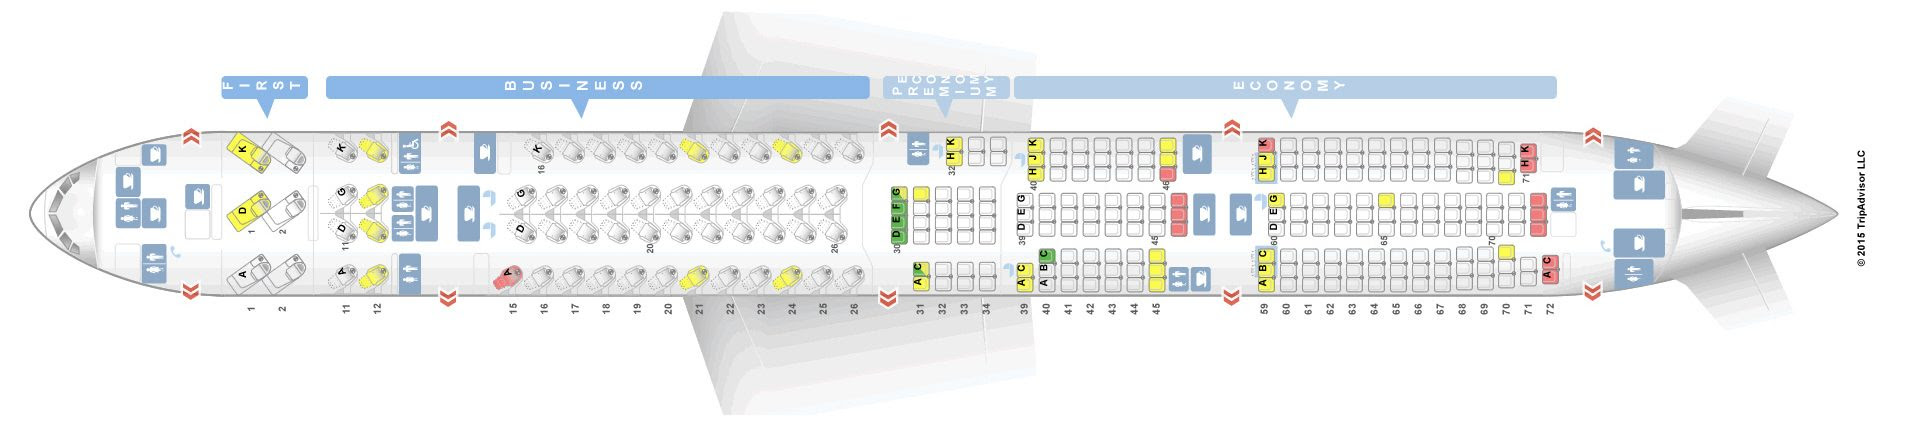 Sitzplan Boeing 777 300er - Sitzplan auf Deutsch